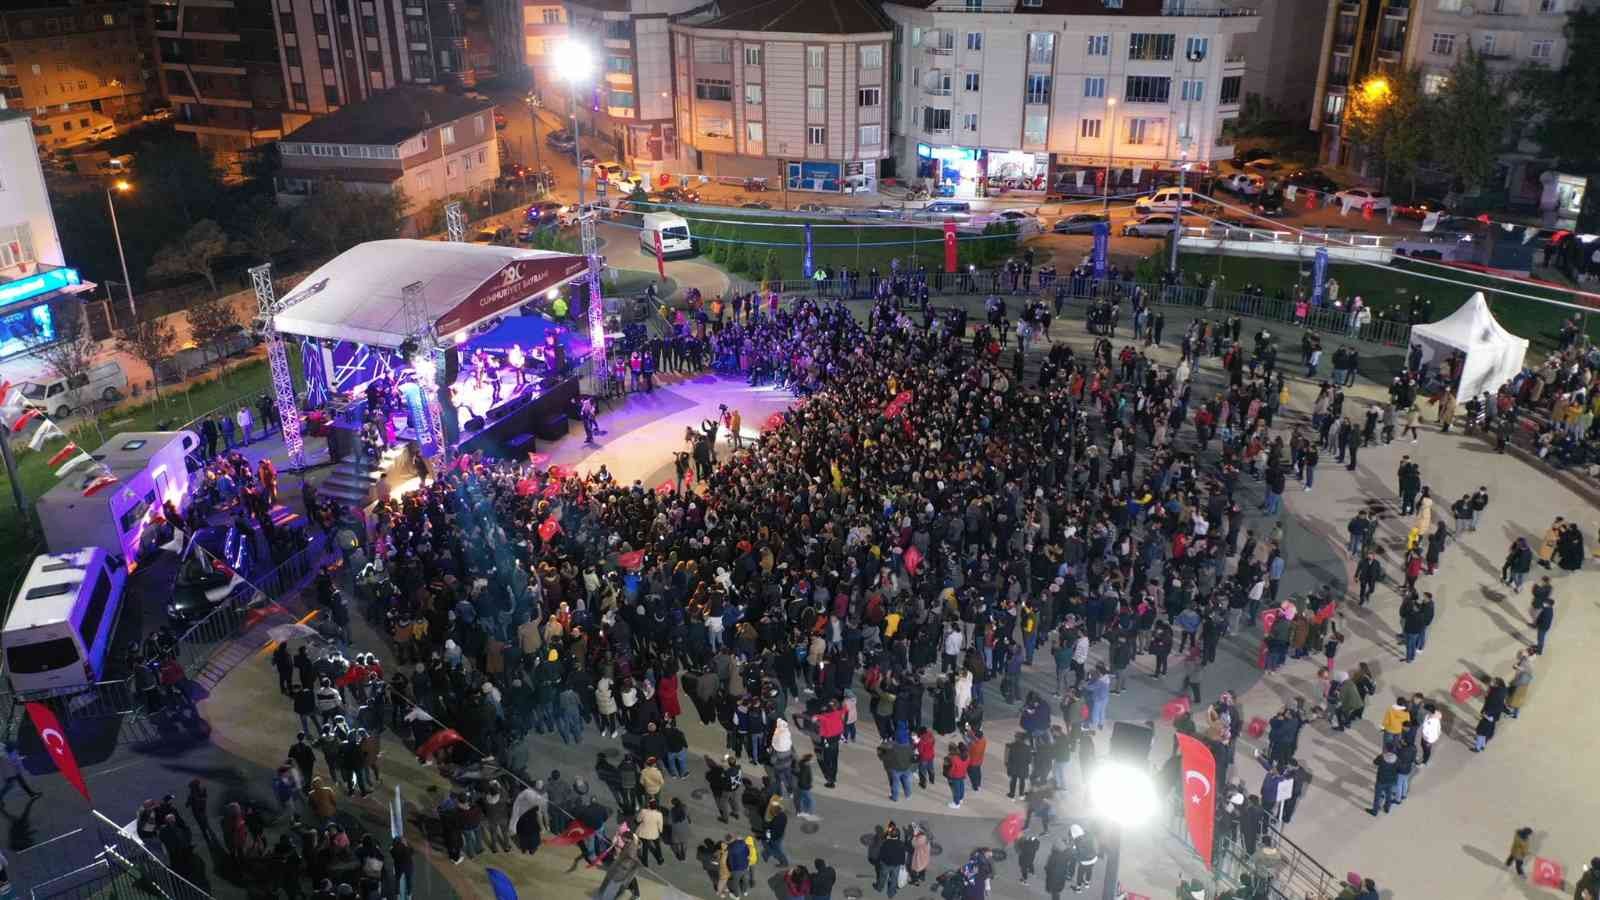 Arnavutköy’de Cumhuriyet Bayramı Murat Kekilli konseriyle kutlandı #istanbul